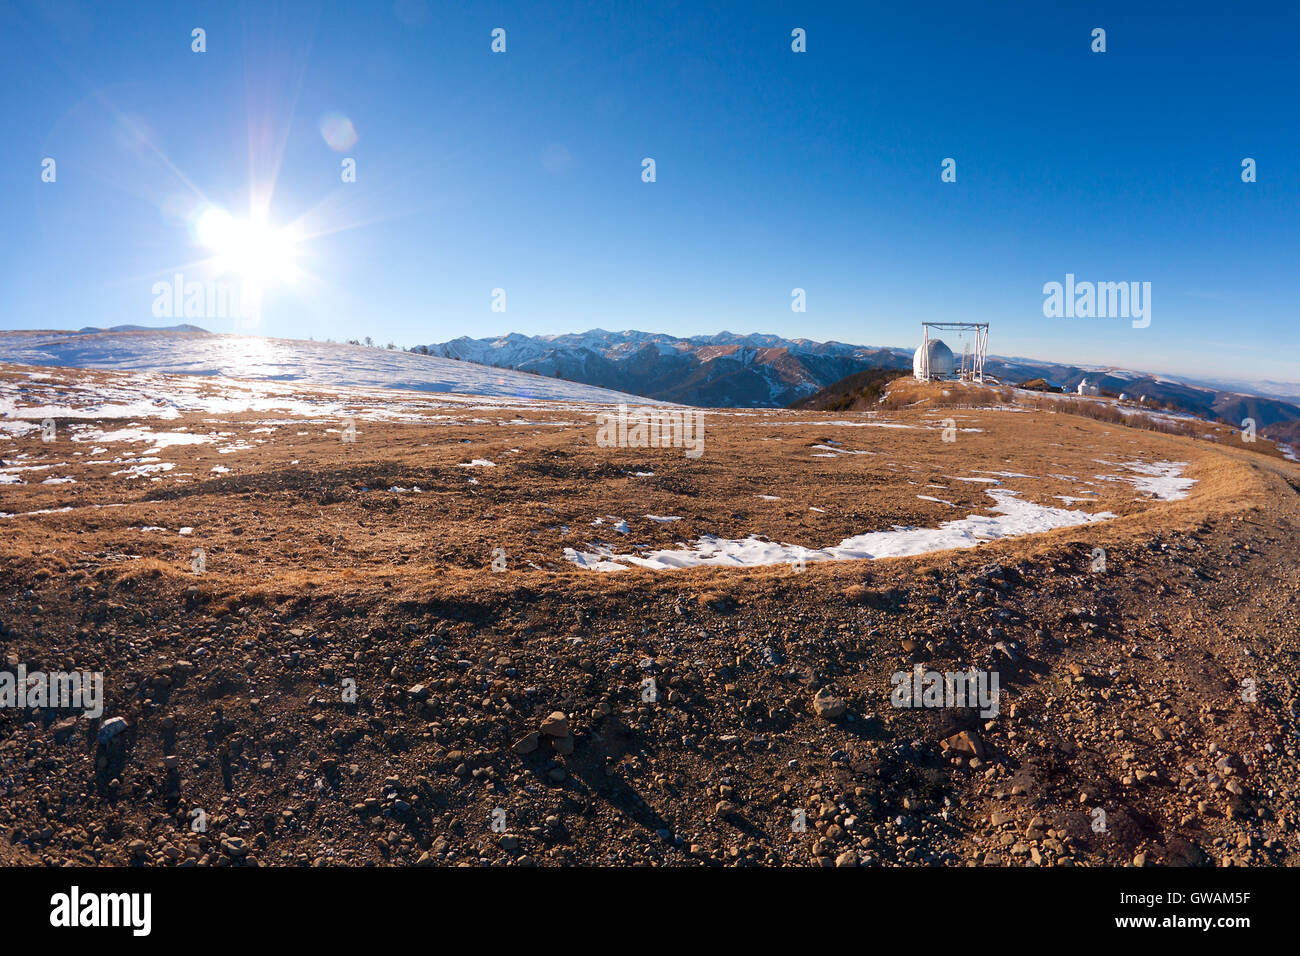 Spezielle Astrophysikalische Observatorium der russischen Akademie der Wissenschaften, gelegen in den Bergen (Kaukasus, Russland) auf 2000 m Höhe Stockfoto